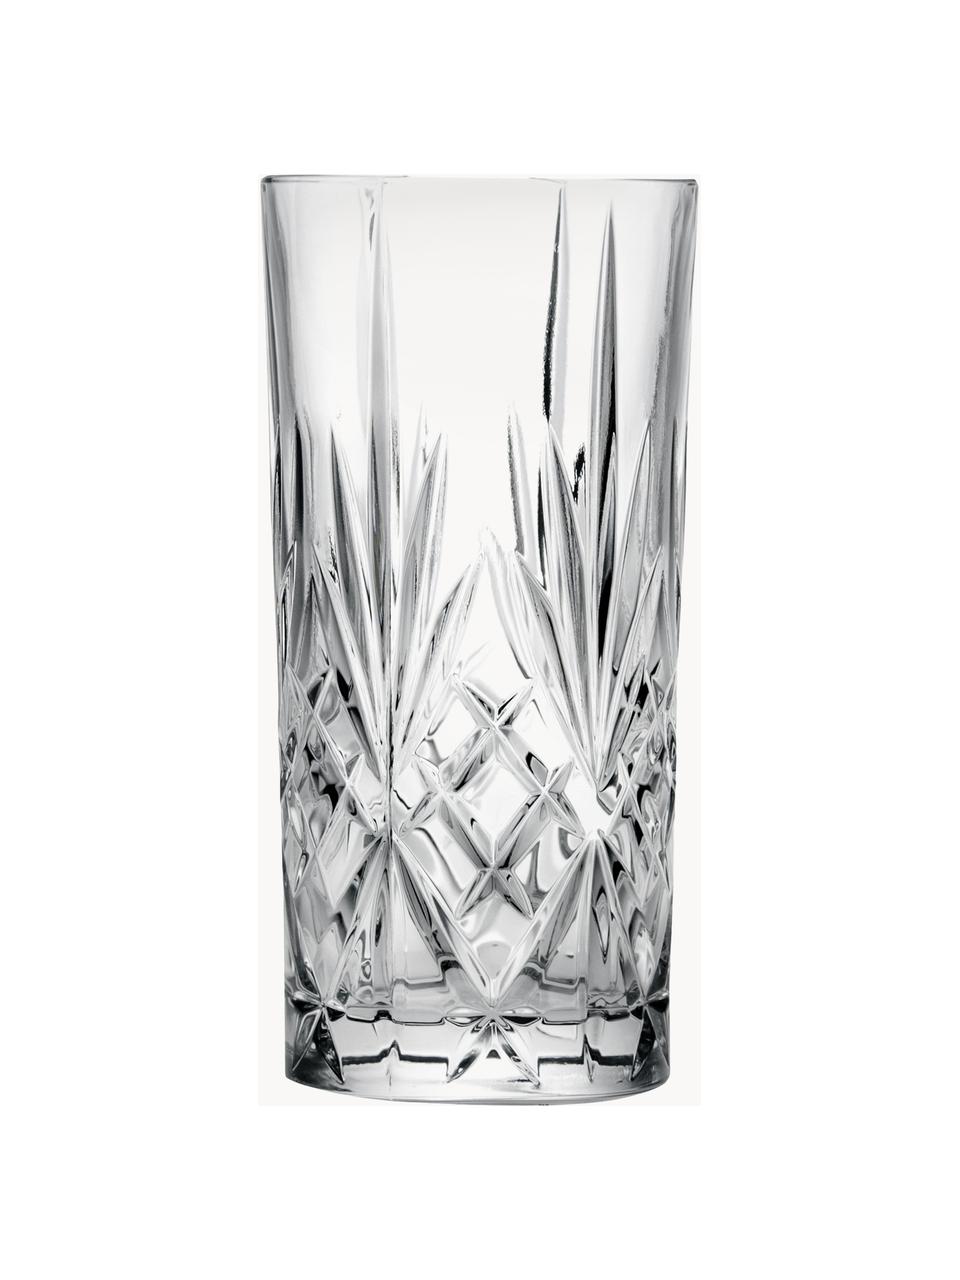 Sada křišťálových sklenic na long drink Bichiera, 4 díly, Křišťál, Transparentní, Ø 7 cm, V 15 cm, 360 ml